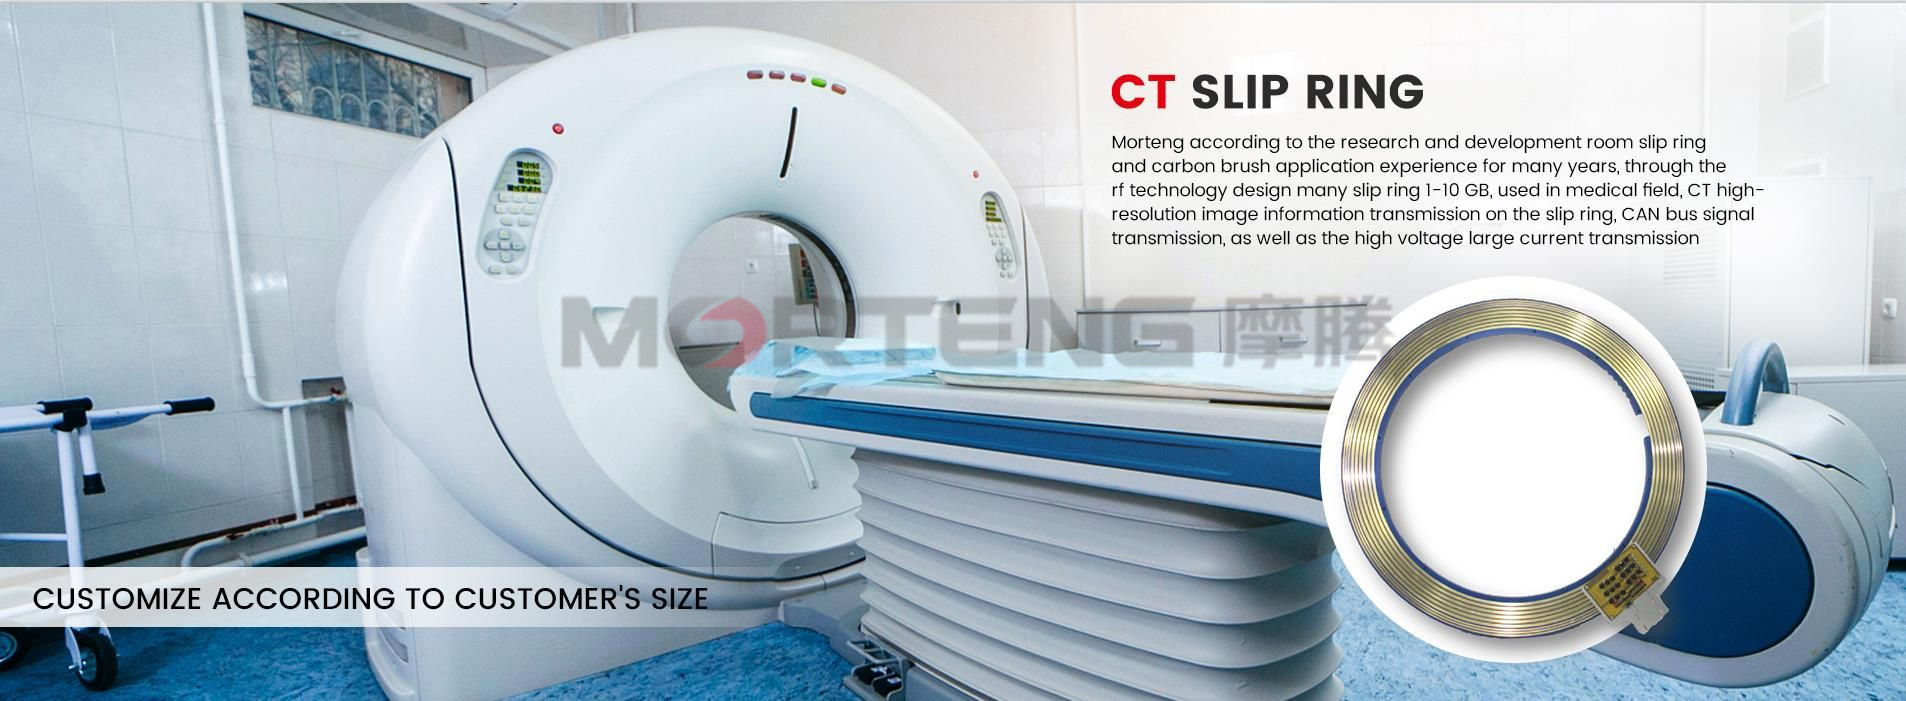 Плъзгащ пръстен за медицинско CT сканиране (2)